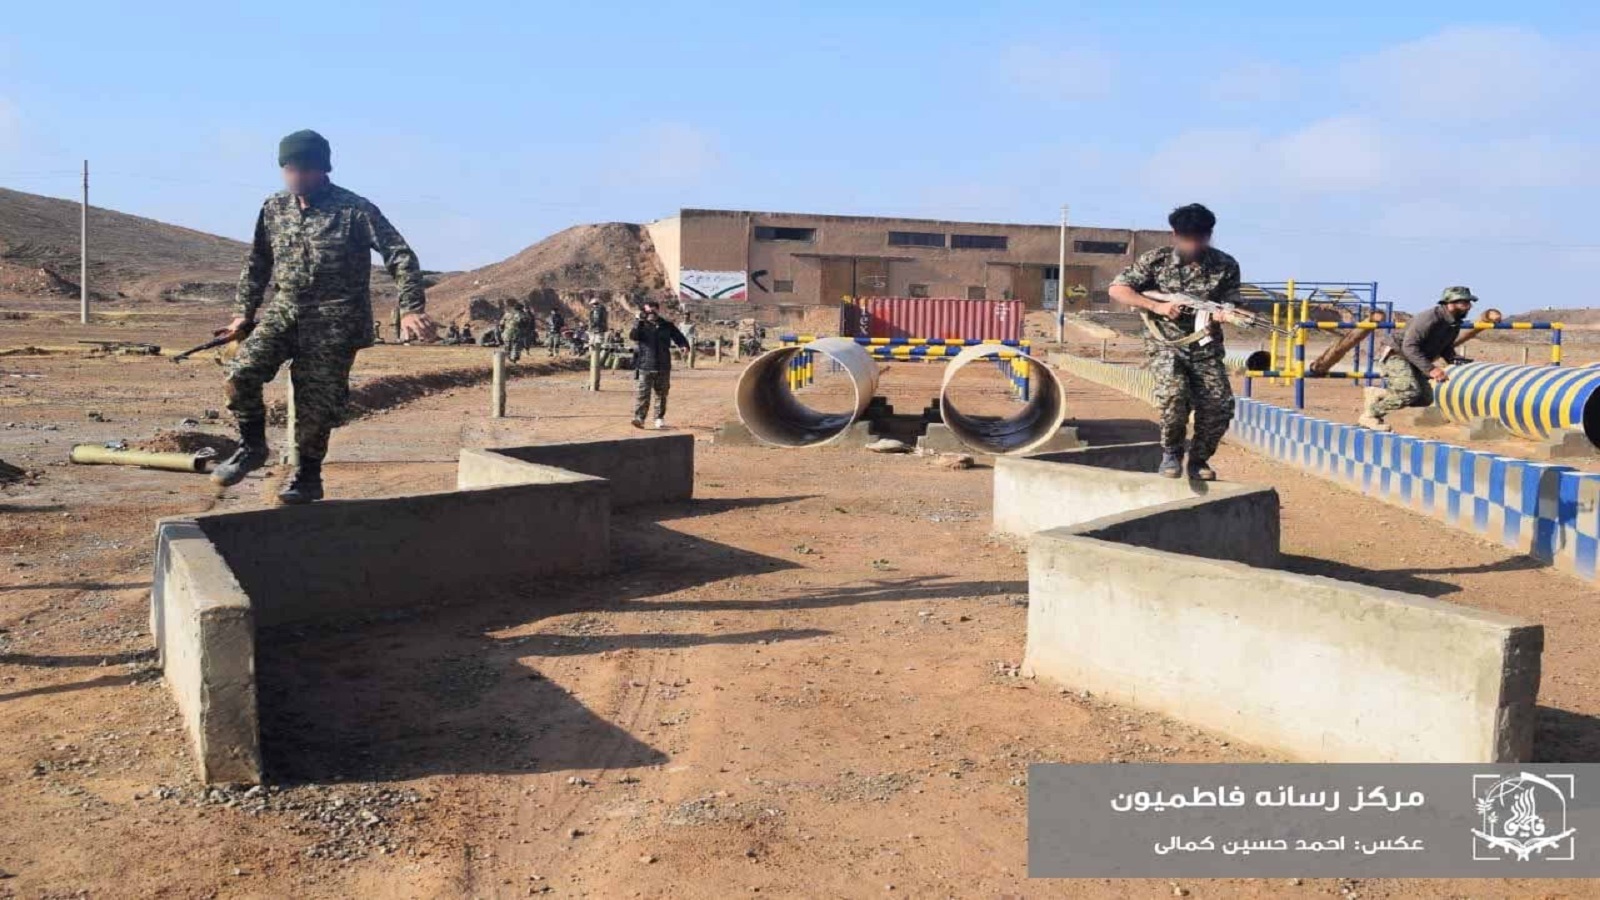 البادية السورية: "النمر" لقيادة العمليات ضد "داعش"